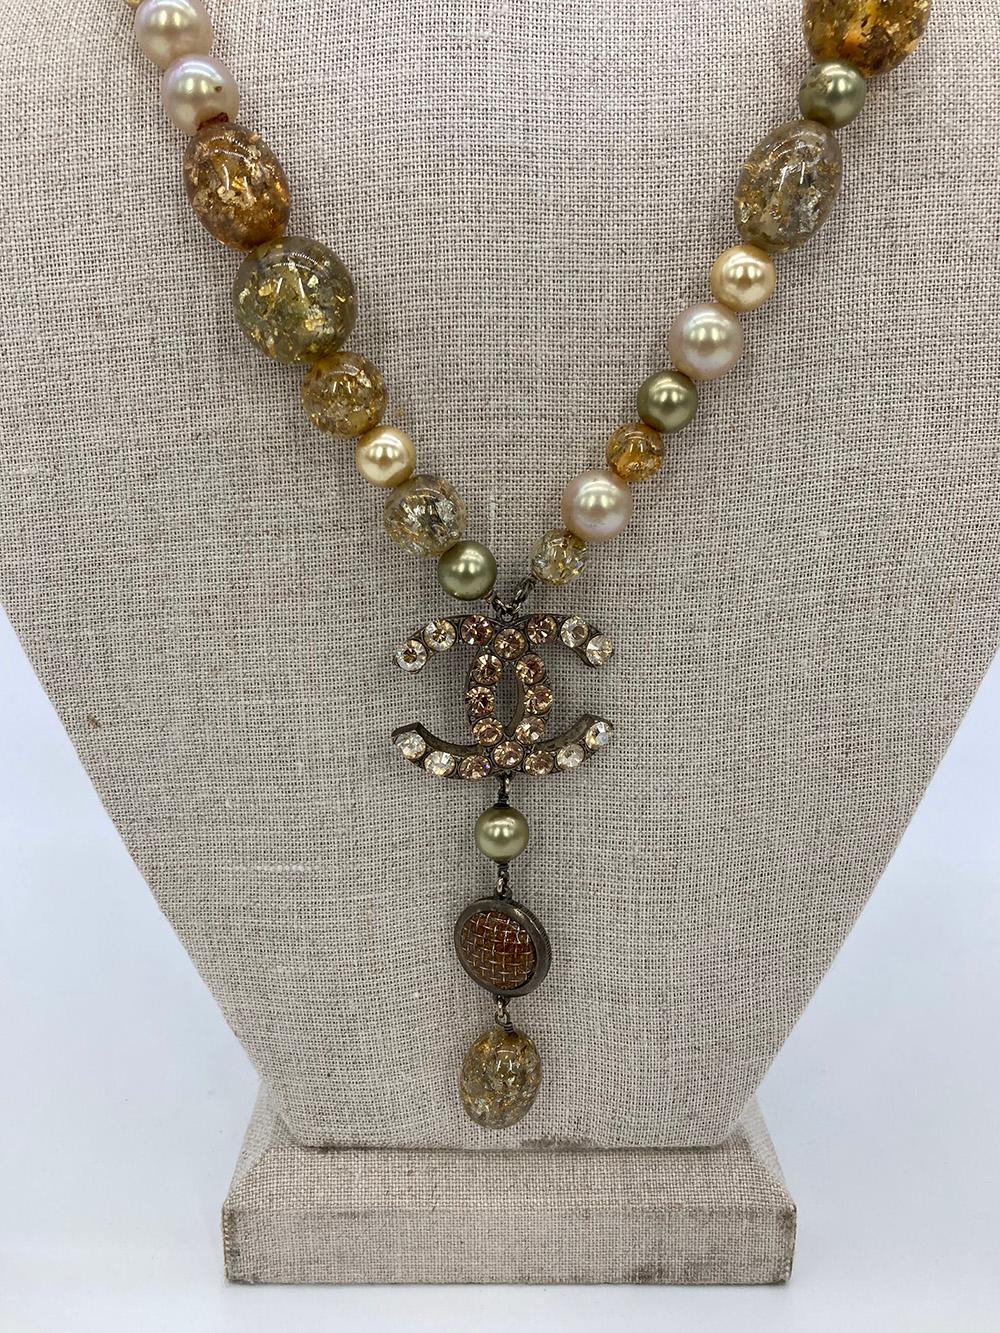 Vintage Chanel Rhinestone Beaded Pearl Necklace in ausgezeichnetem Zustand. Einzigartige Harzperlen in Gold, Grün, Grau und Orange mit funkelnden Metallplättchen im Inneren. Durchgehend cremefarbene, gelb und grün gefärbte Perlen als Ausgleich zu